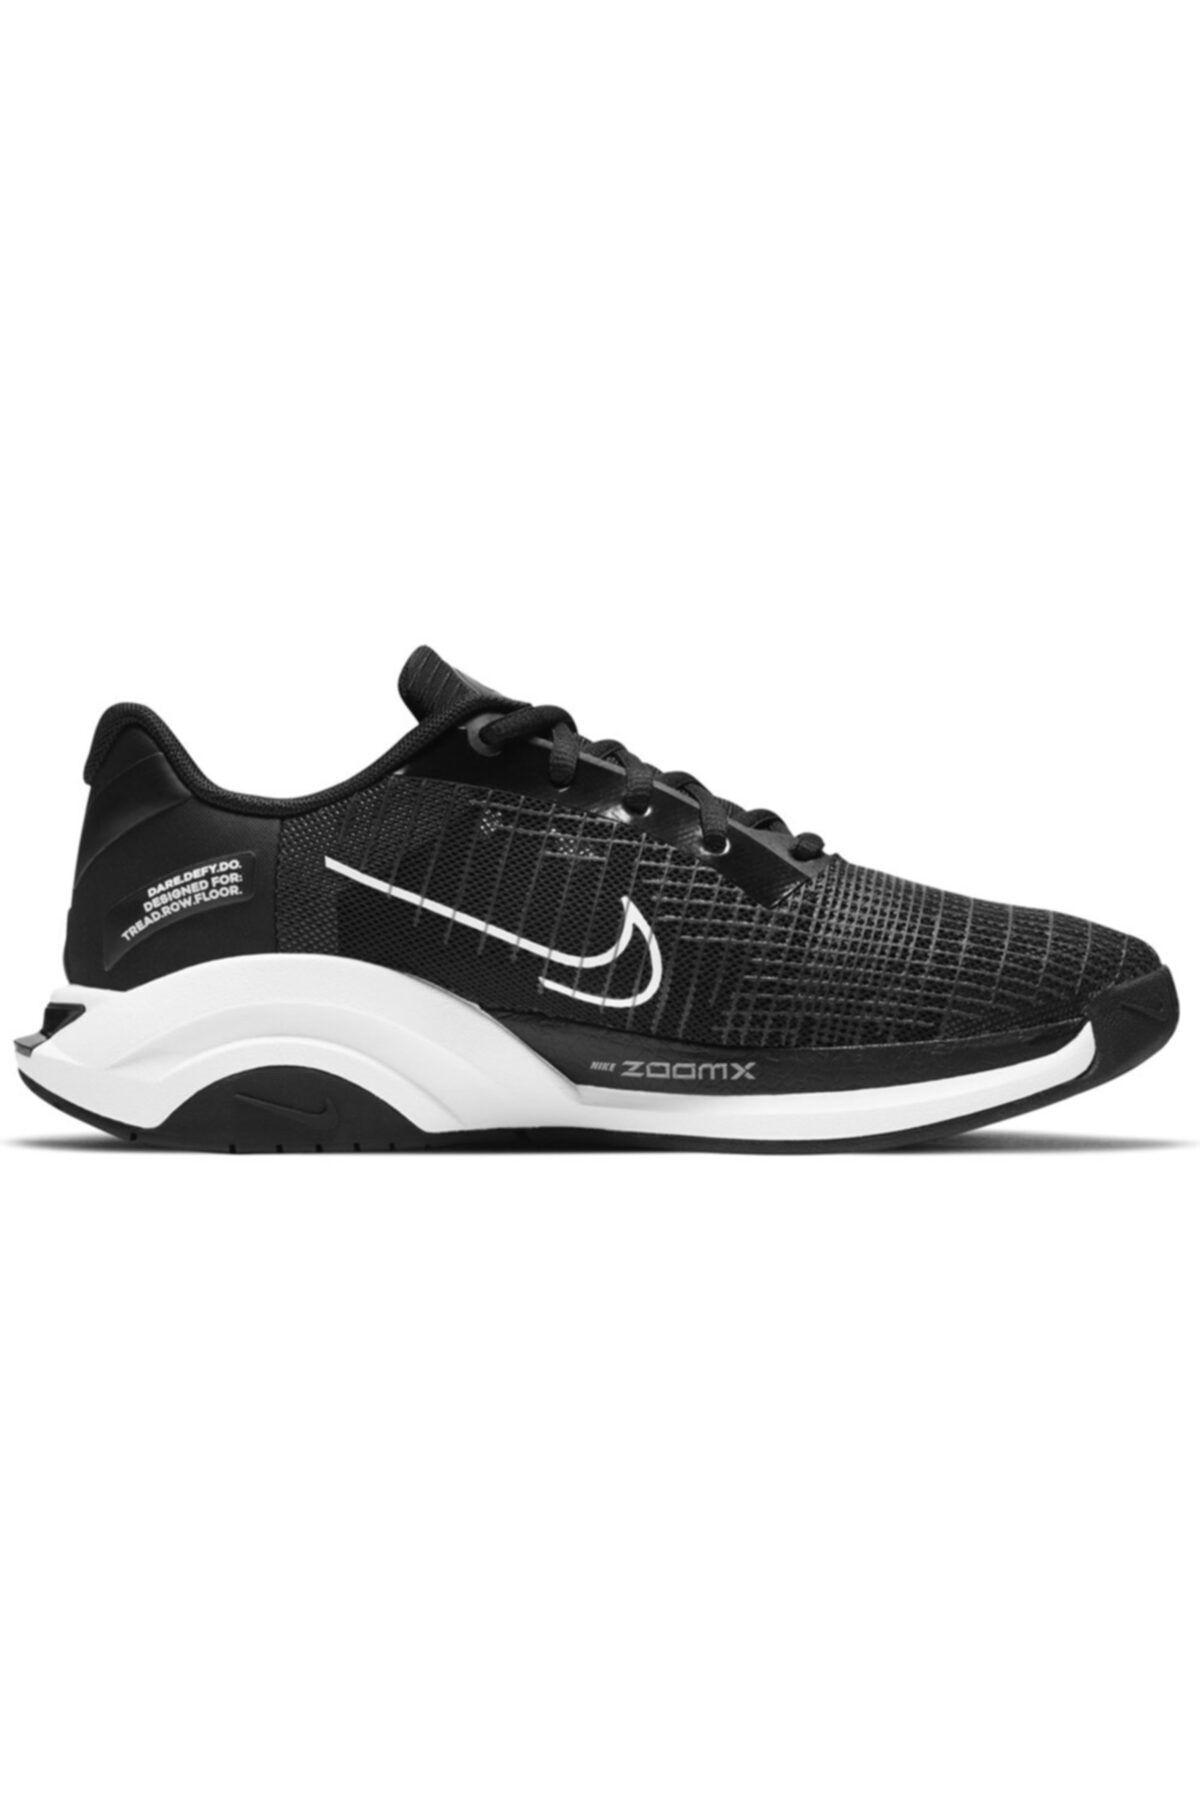 Nike W Zoomx Superrep Surge Kadın Siyah Koşu Ayakkabı - Ck9406-001